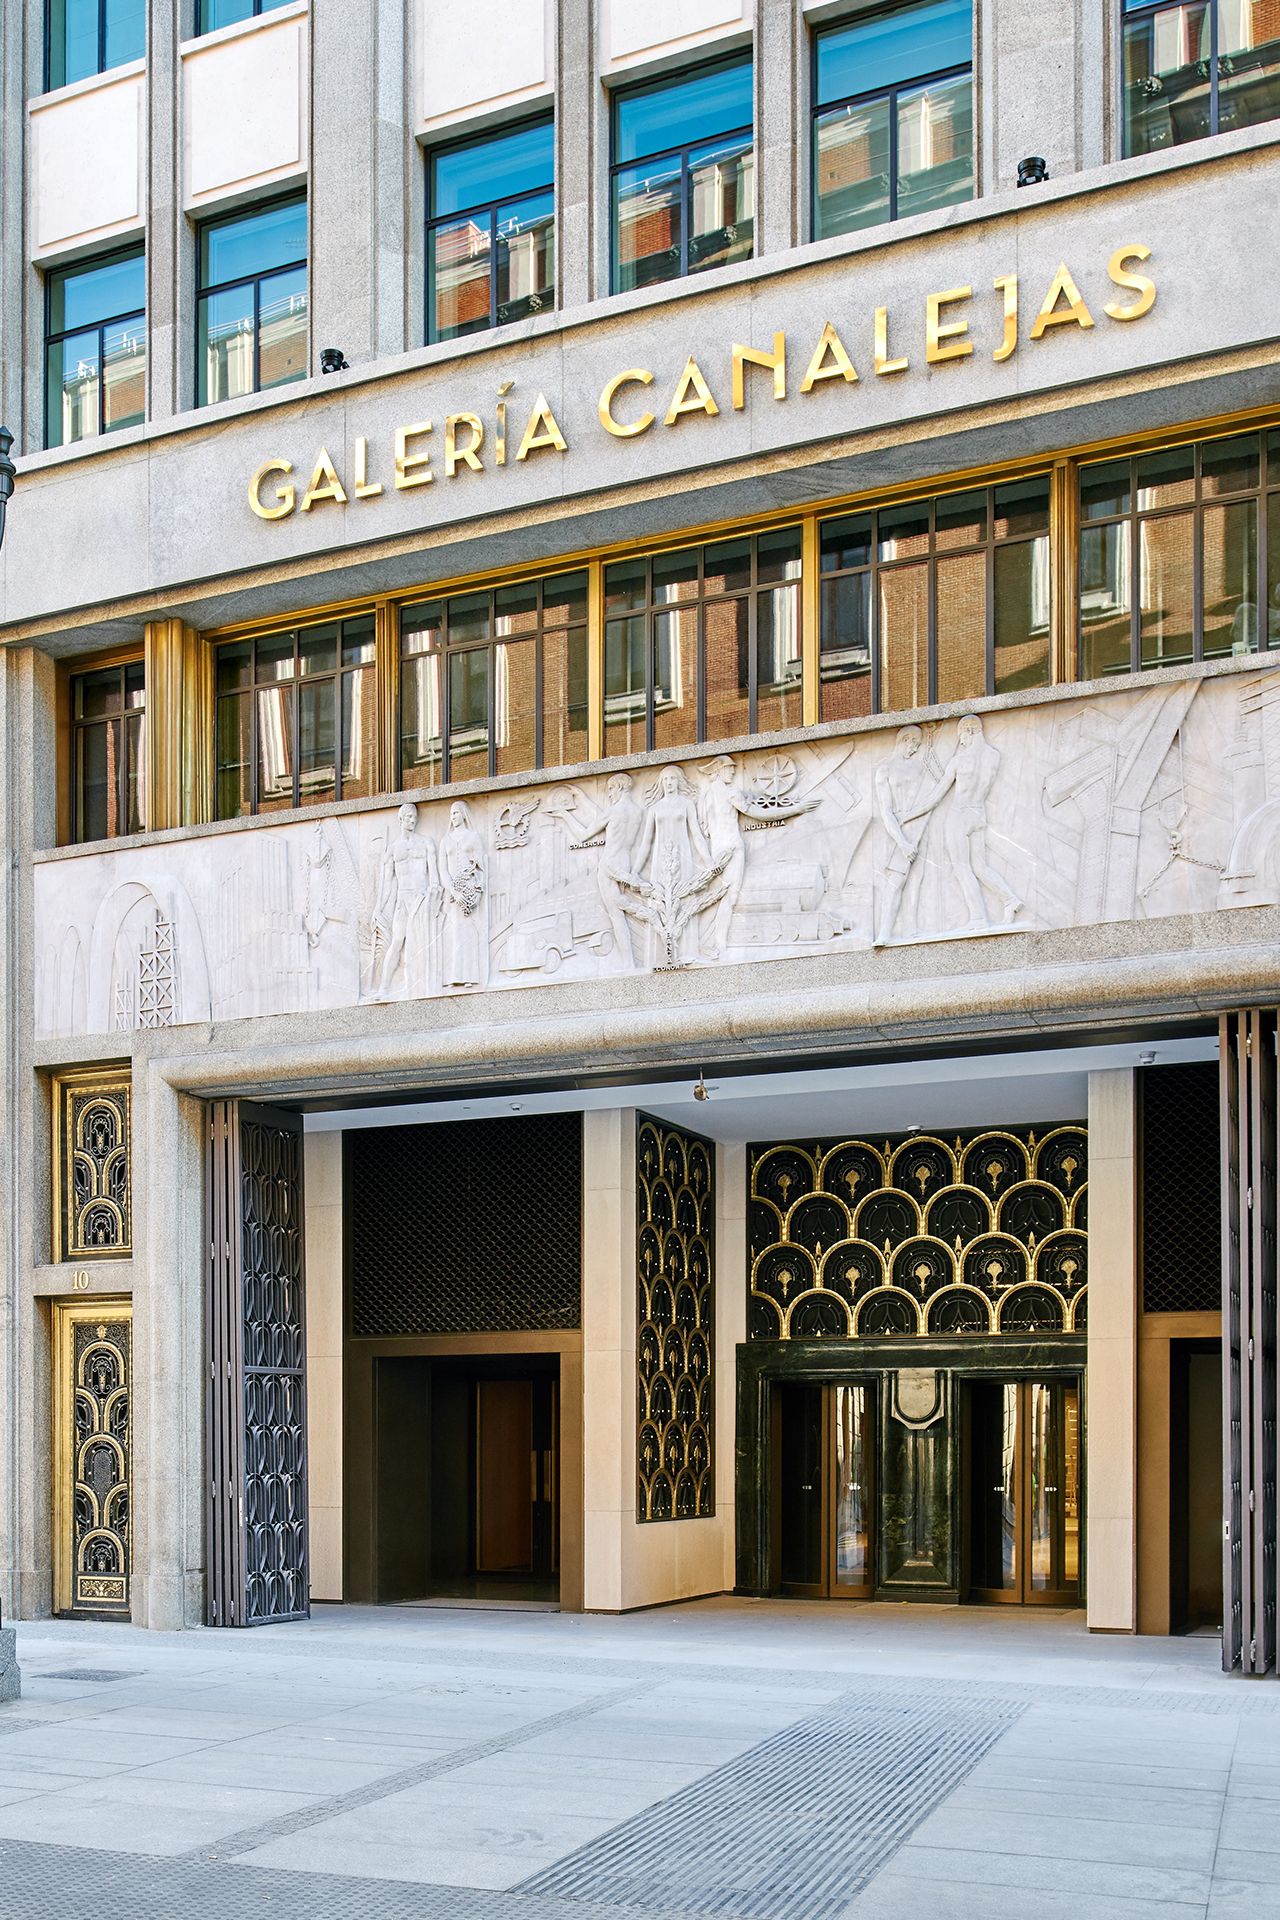 Galería Canalejas hosts the most exclusive pieces of Louis Vuitton